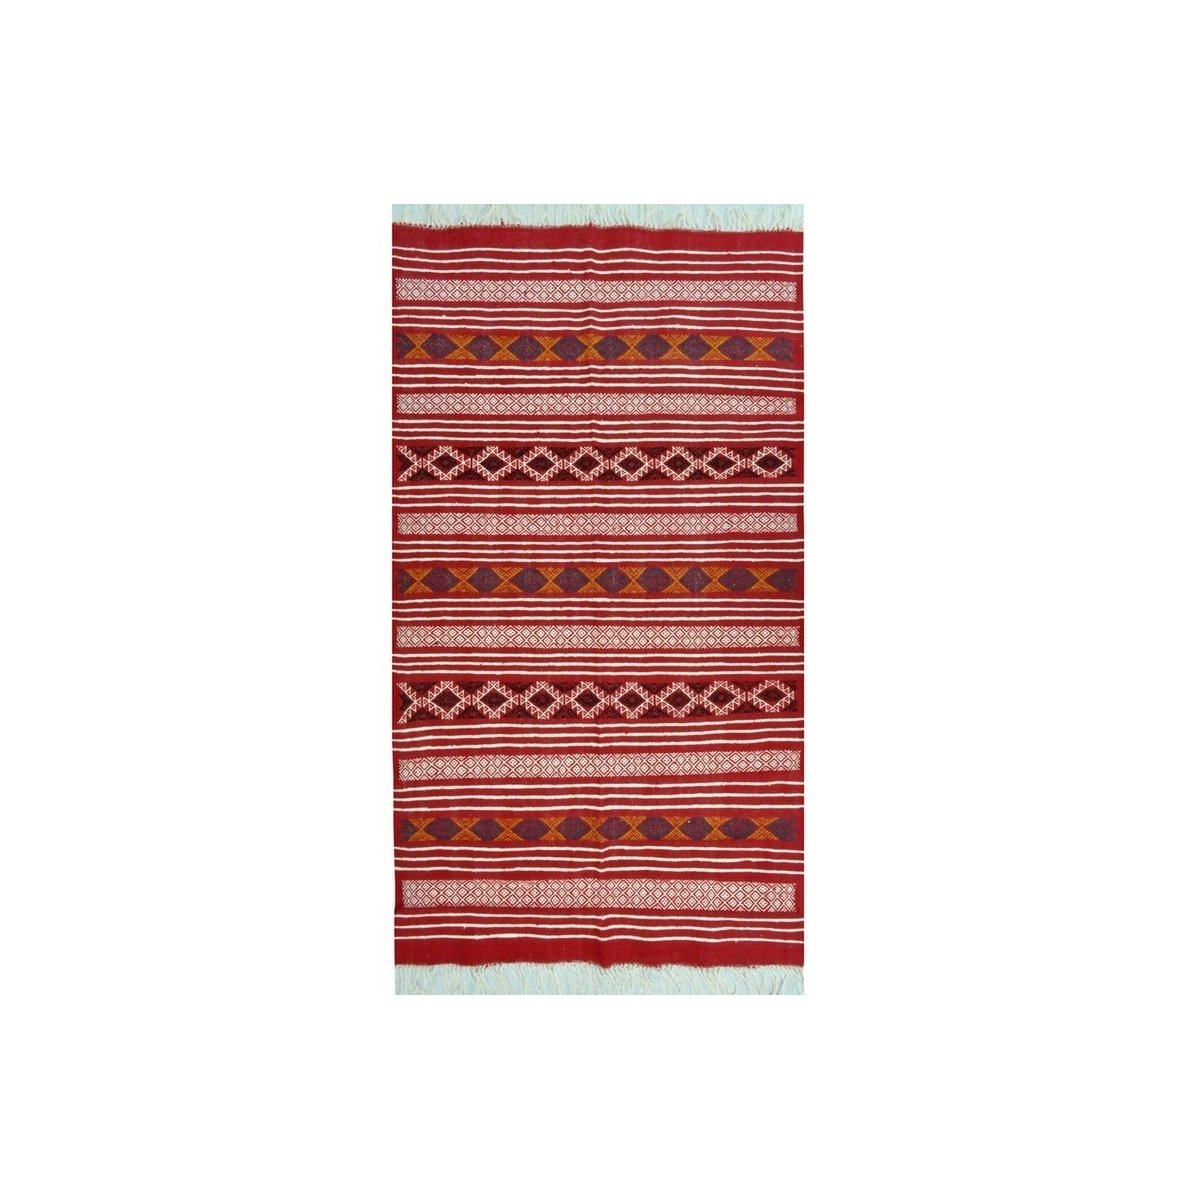 Tapete berbere Tapete Kilim Zaafrane 105x145 Multicor (Tecidos à mão, Lã, Tunísia) Tapete tunisiano kilim, estilo marroquino. Ta